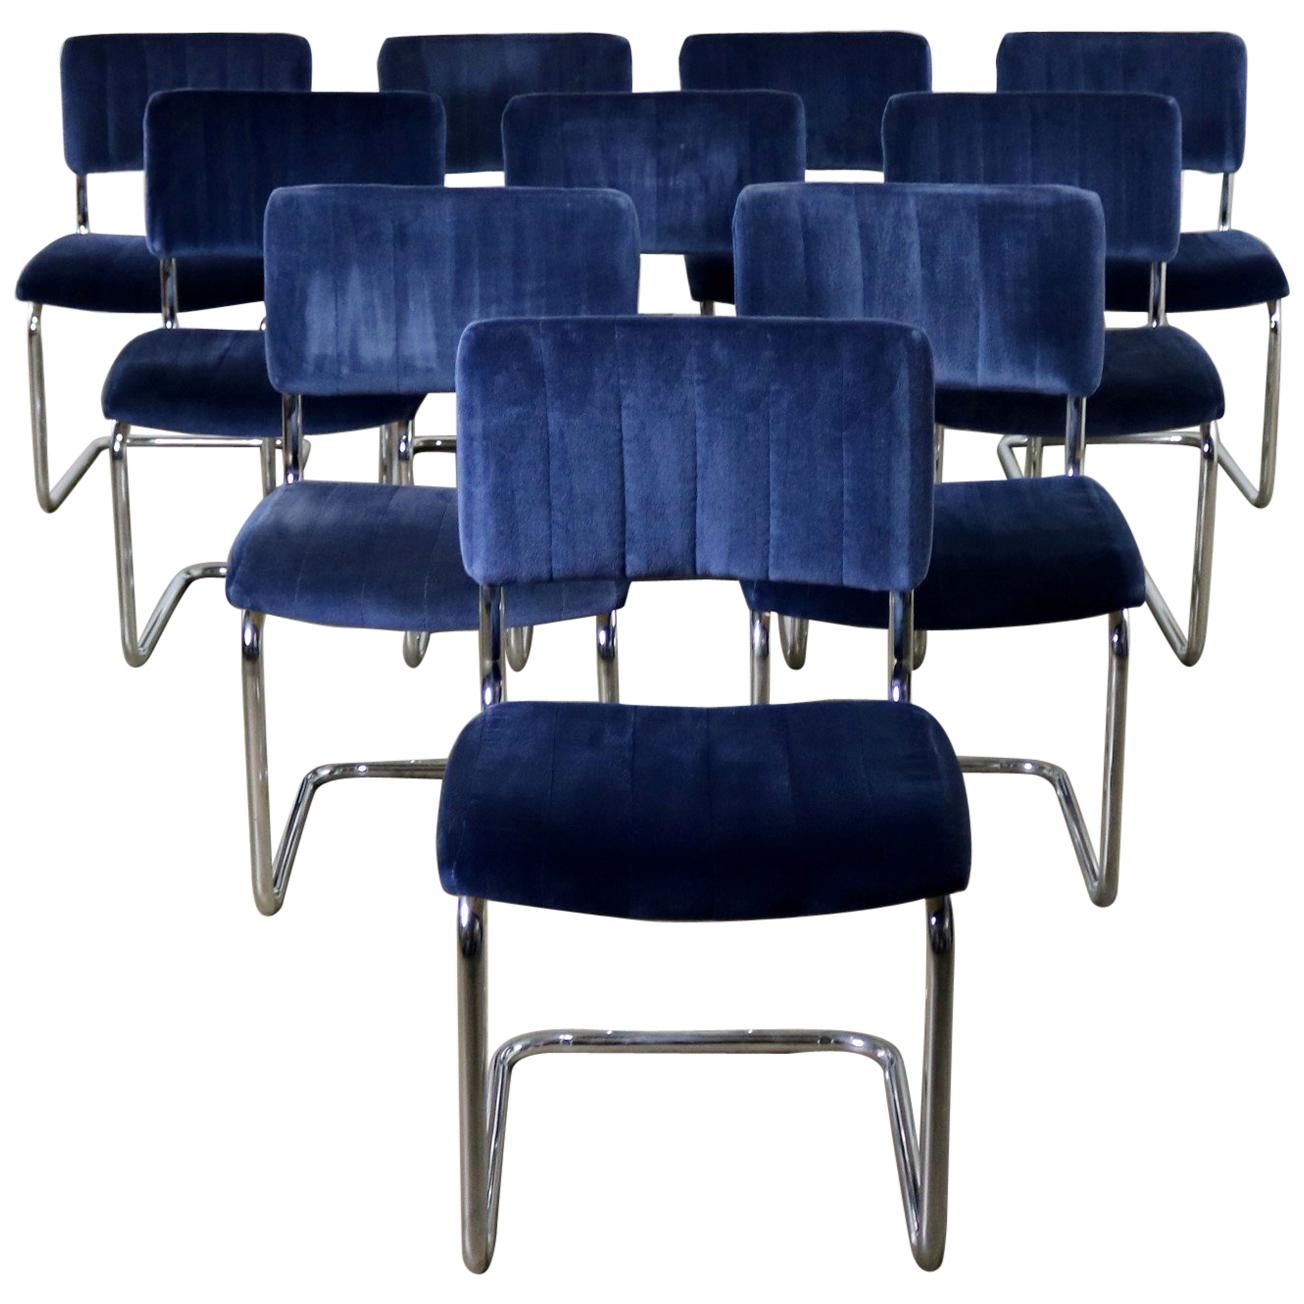 FOR LISA - 4 Cantilevered Chrome Blue Velvet Dining Chairs Marcel Breuer Cesca